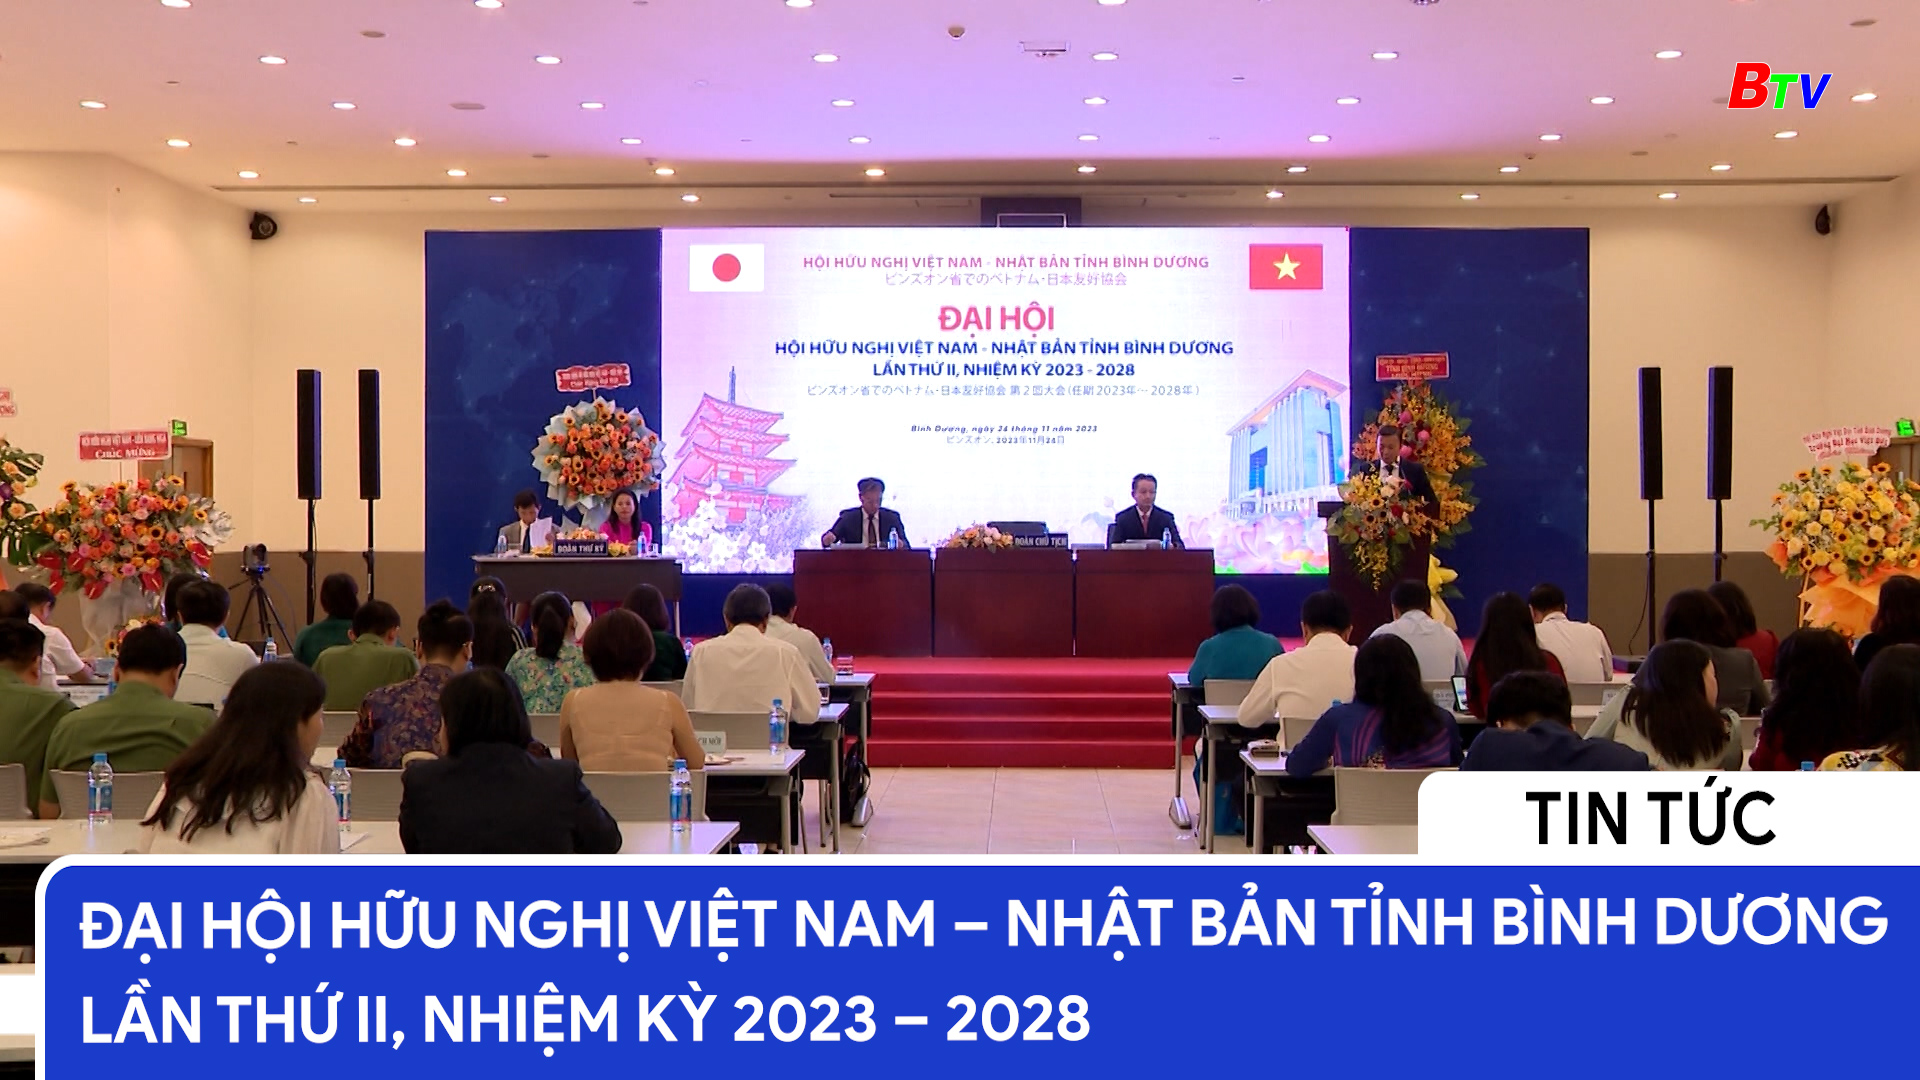 Đại hội hữu nghị Việt Nam – Nhật Bản tỉnh Bình Dương lần thứ II, nhiệm kỳ 2023 – 2028	